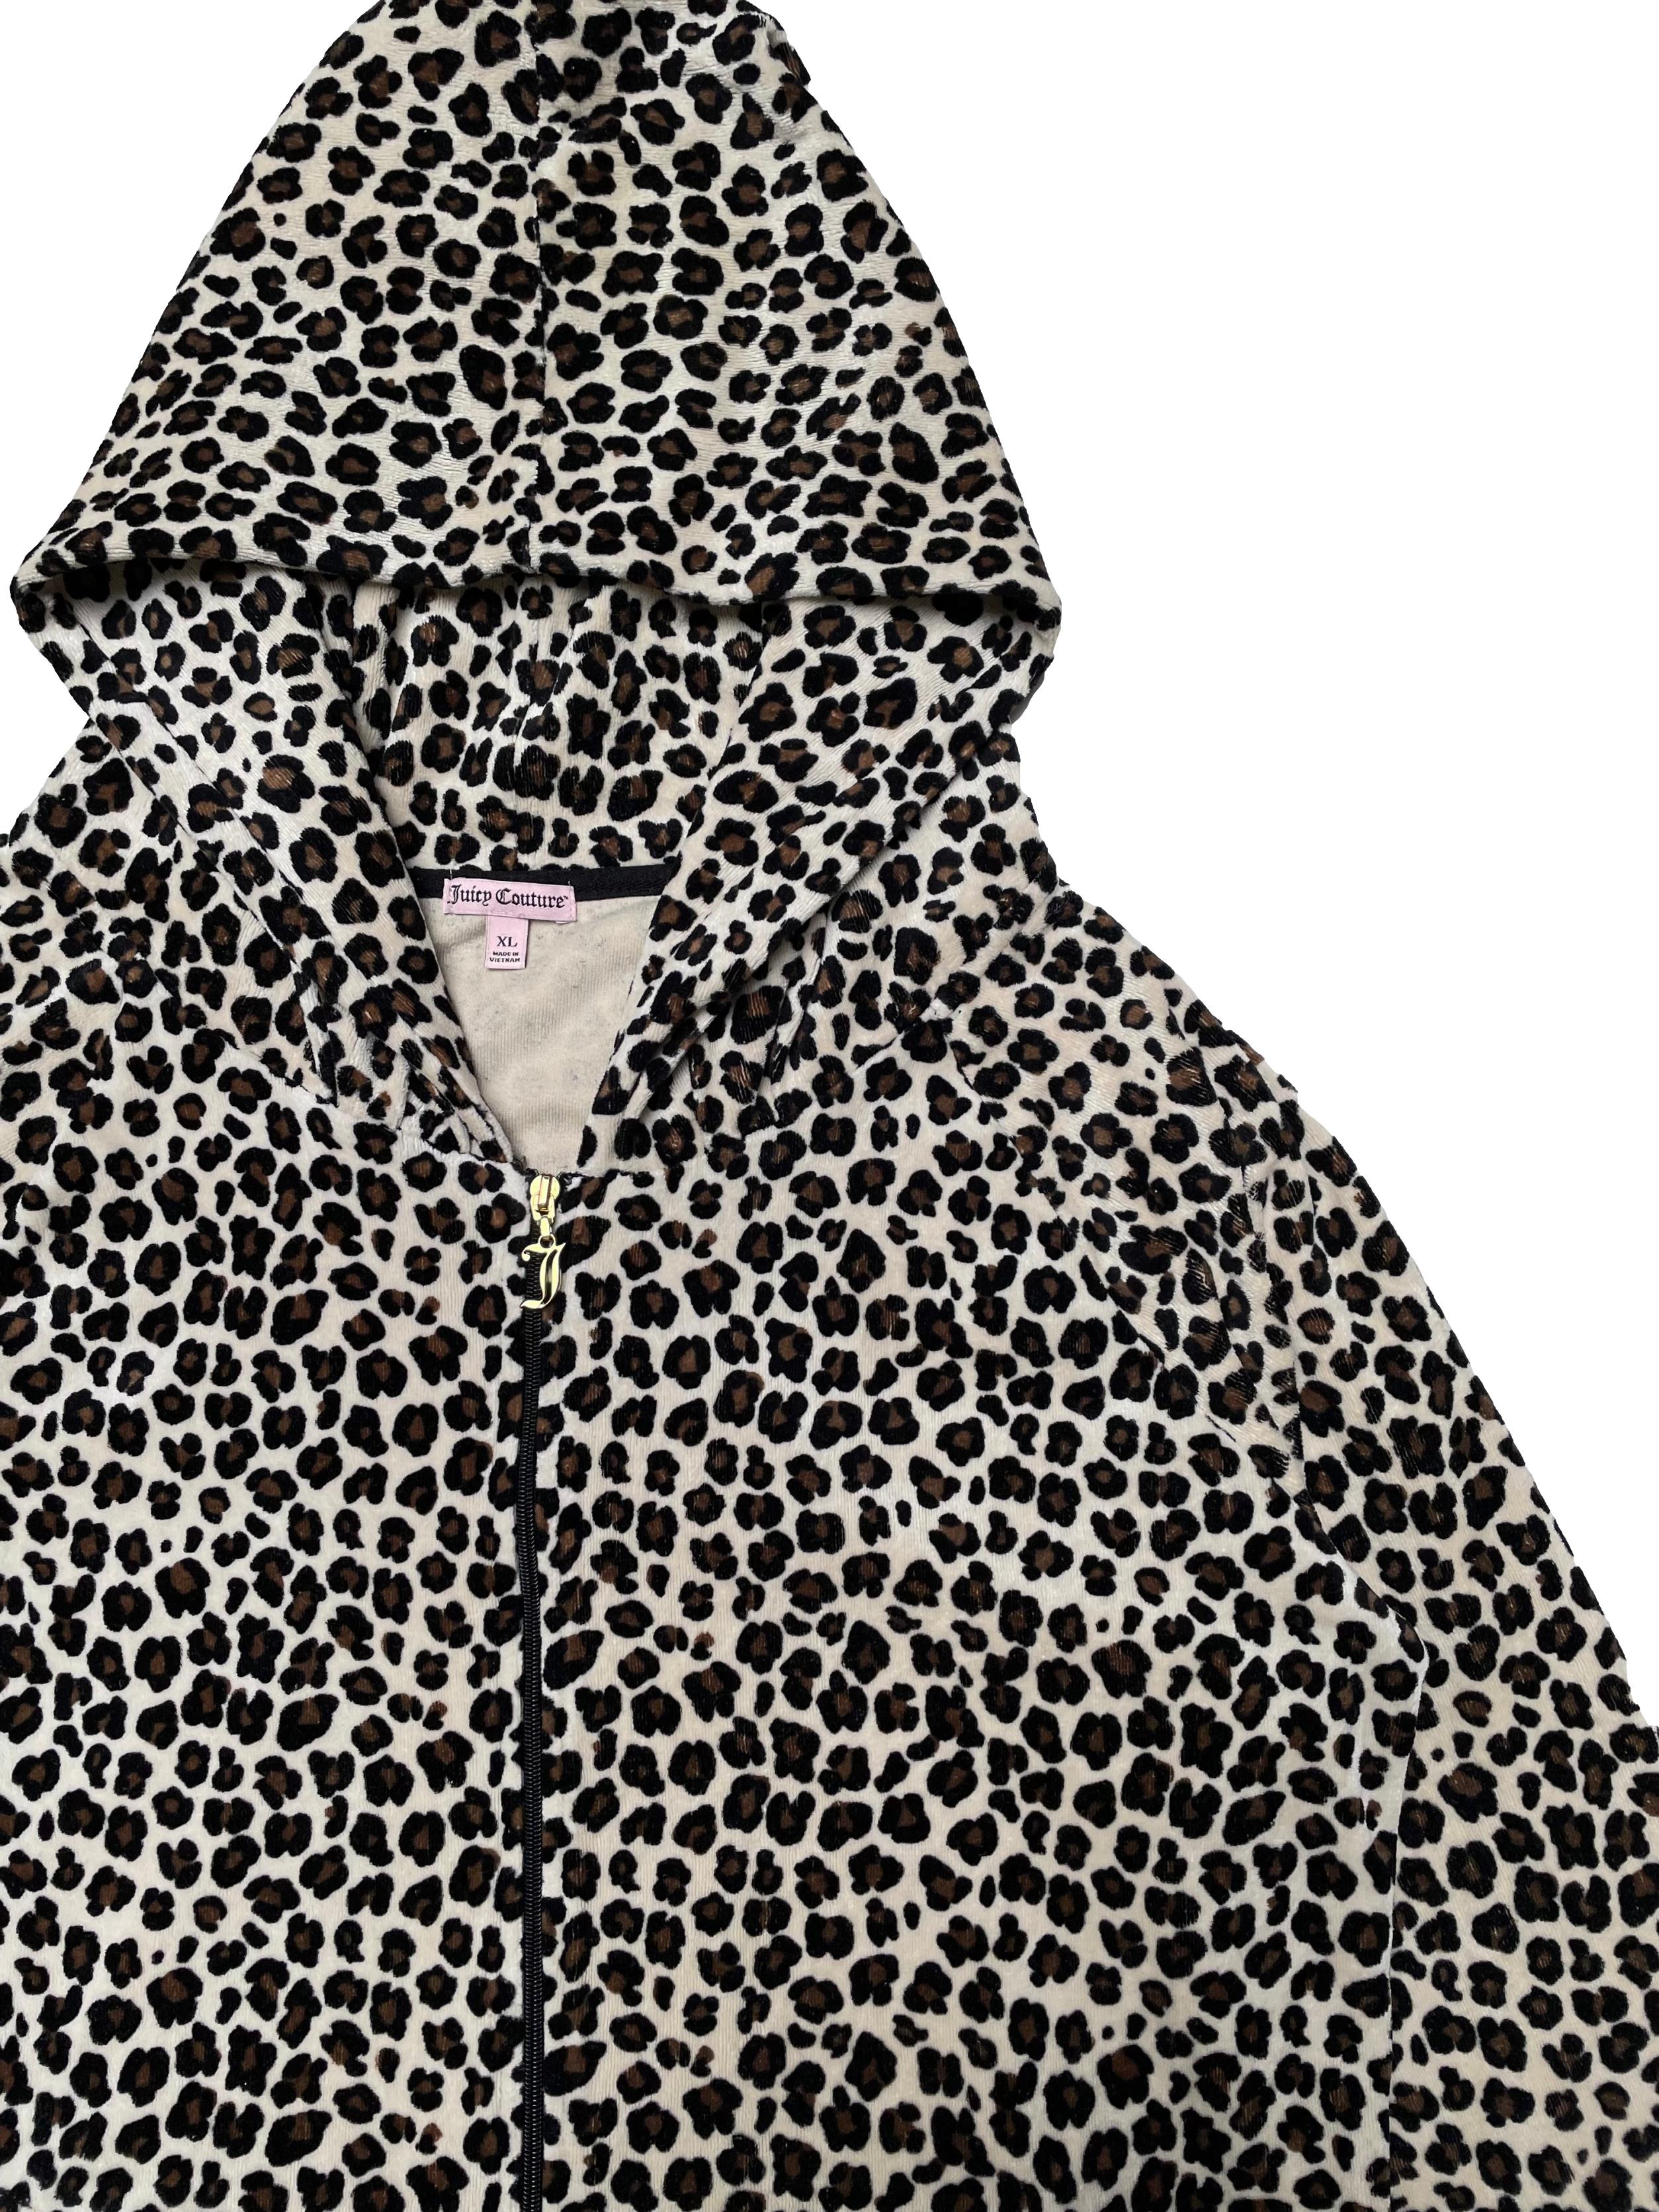 Casaca Juicy Couture de plush animal print mezcla de algodón, con capucha, cierre y bolsillos delanteros, pretinas negras. Busto 113cm Largo 60cm. Precio original 99USD (400 soles)